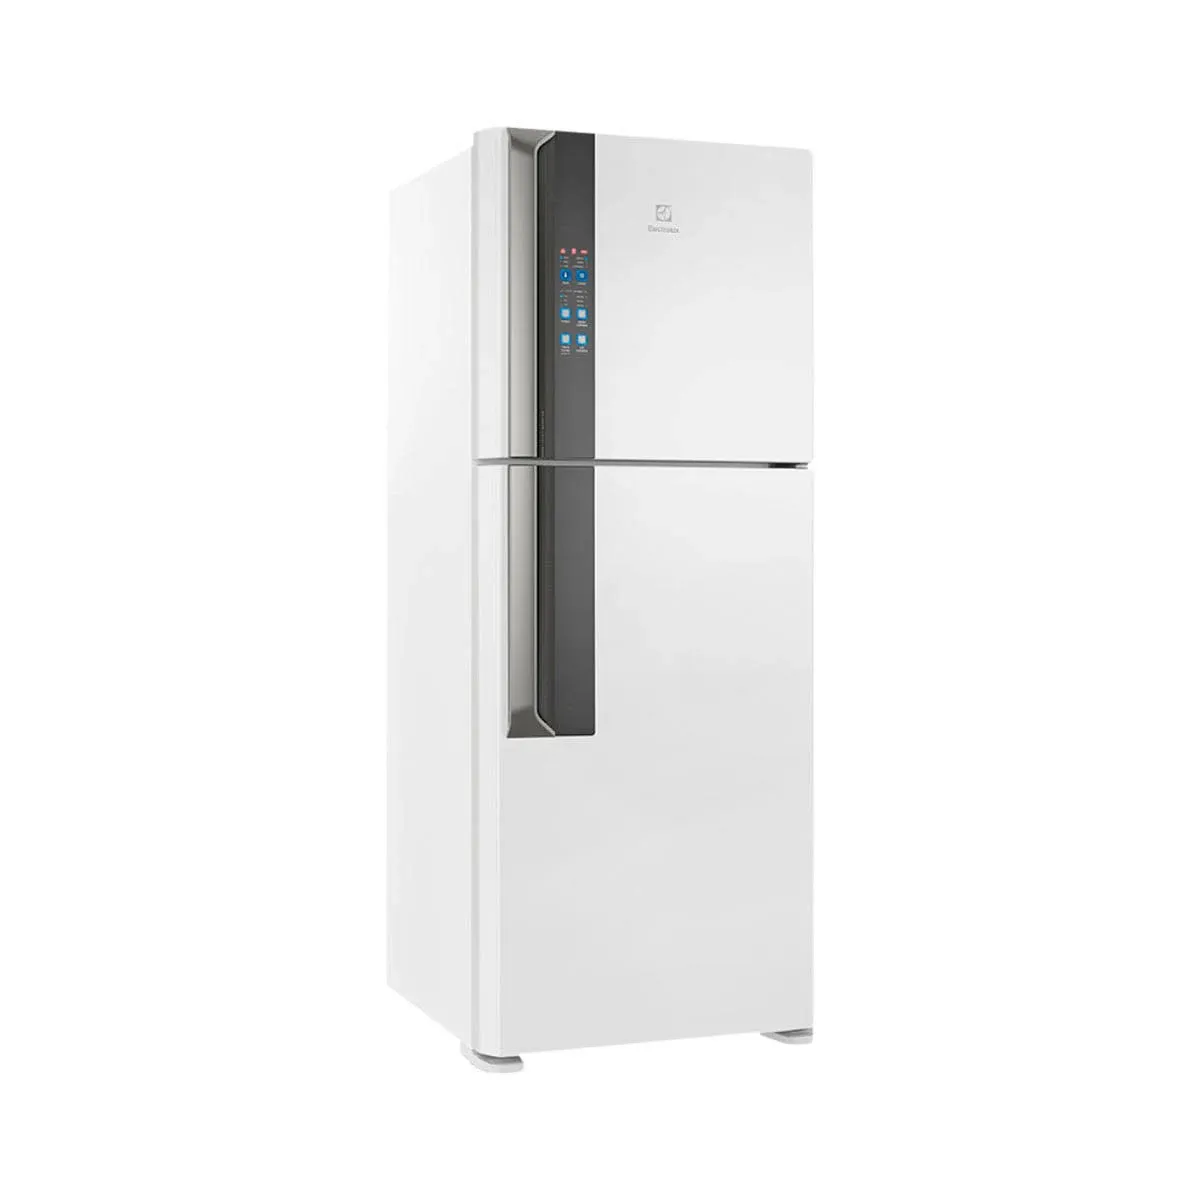 Product image Geladeira Refrigerador Electrolux If55 Frost Free Inverter Top Freezer 431L - 220V